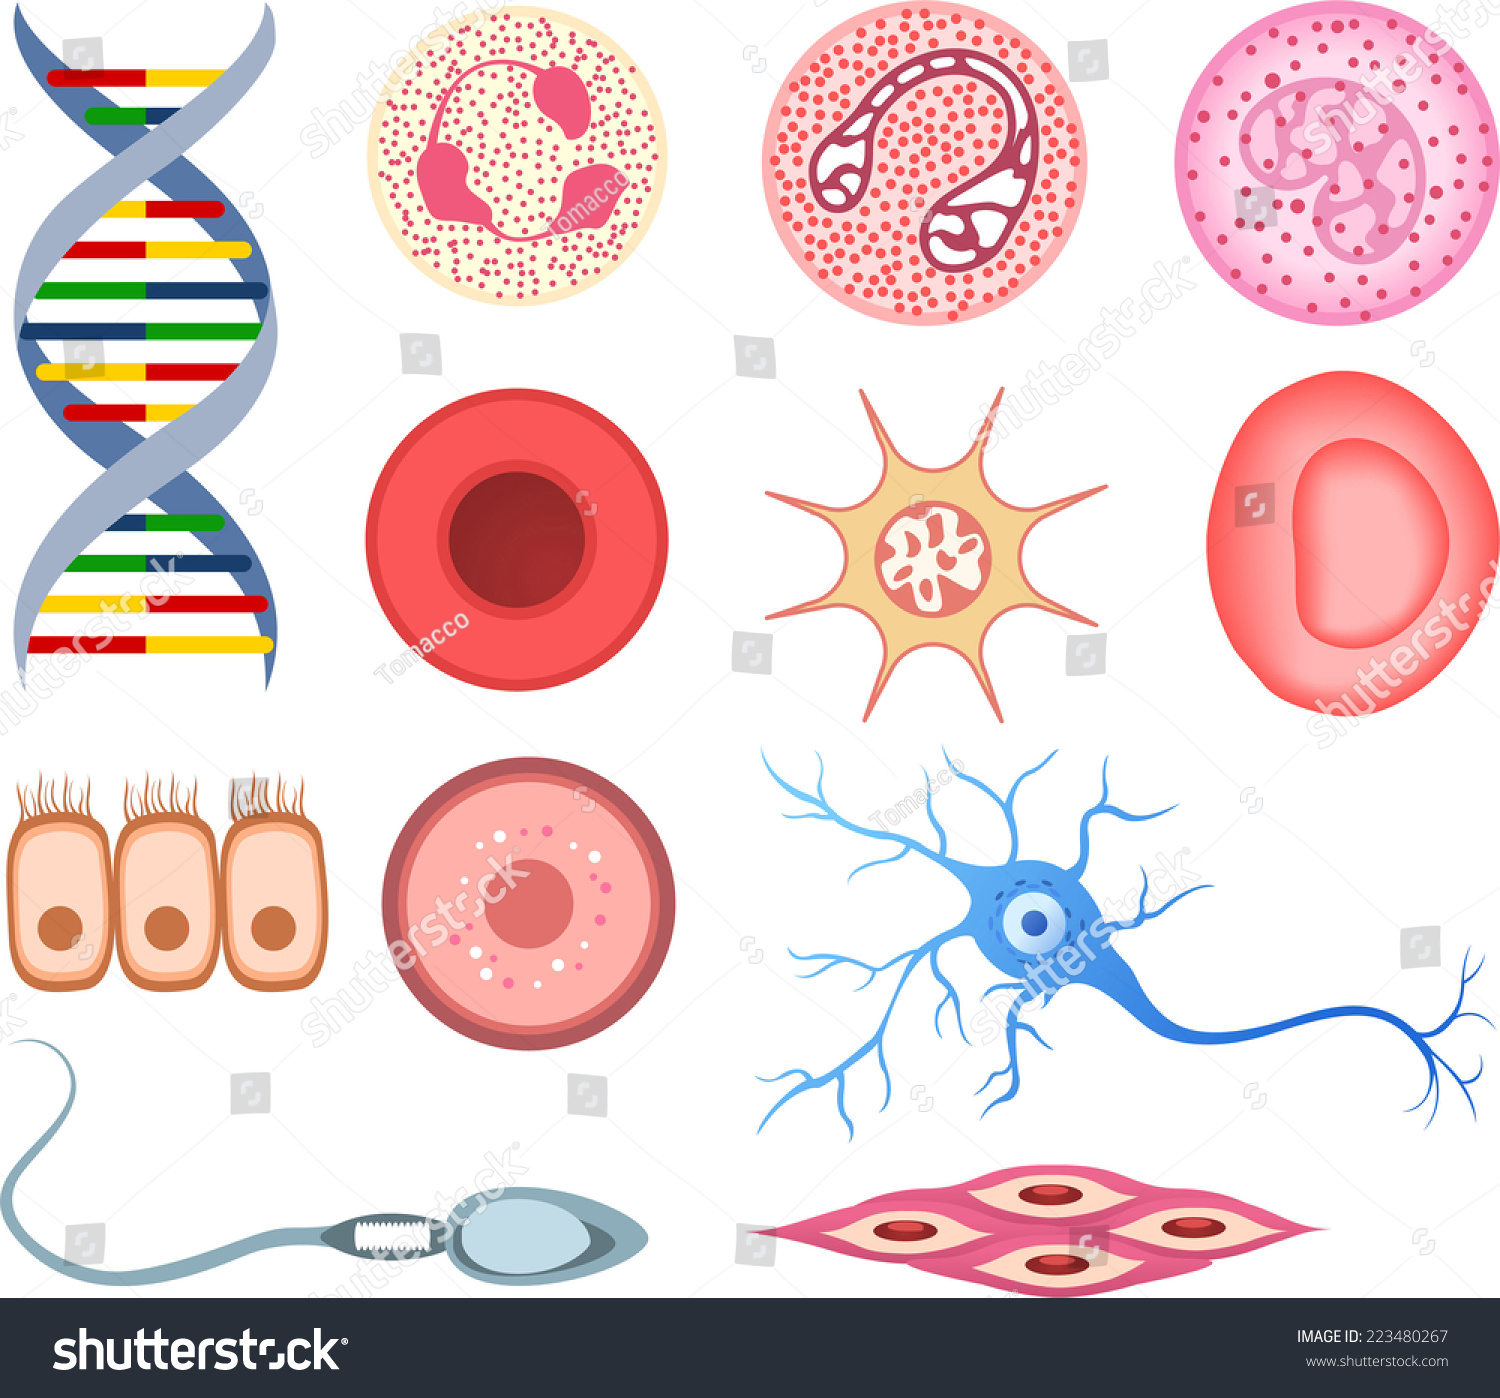 Разнообразие клеток человеческого организма